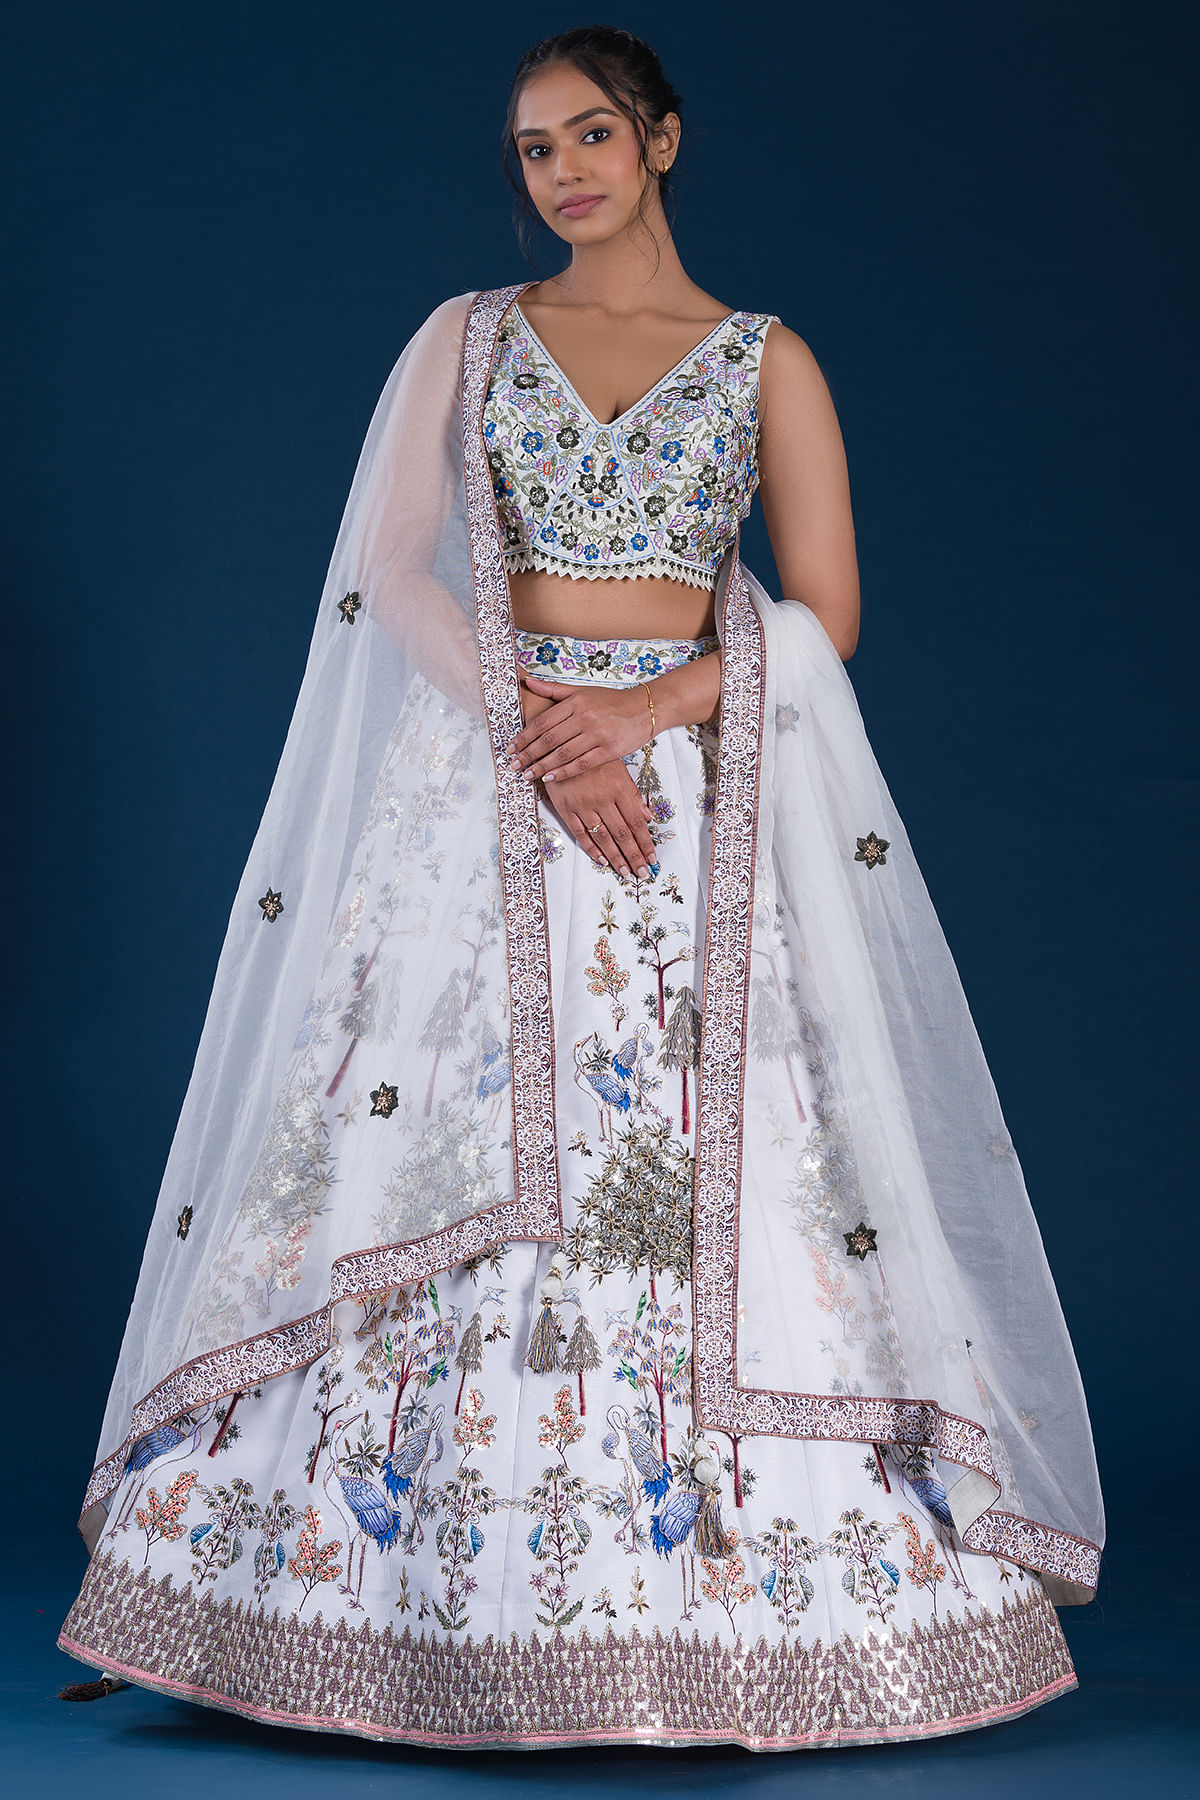 Angalakruthi bridal boutique in Bangalore: Bridal lehenga blouse desigins  in bangalore by Angalakruthi designer studio